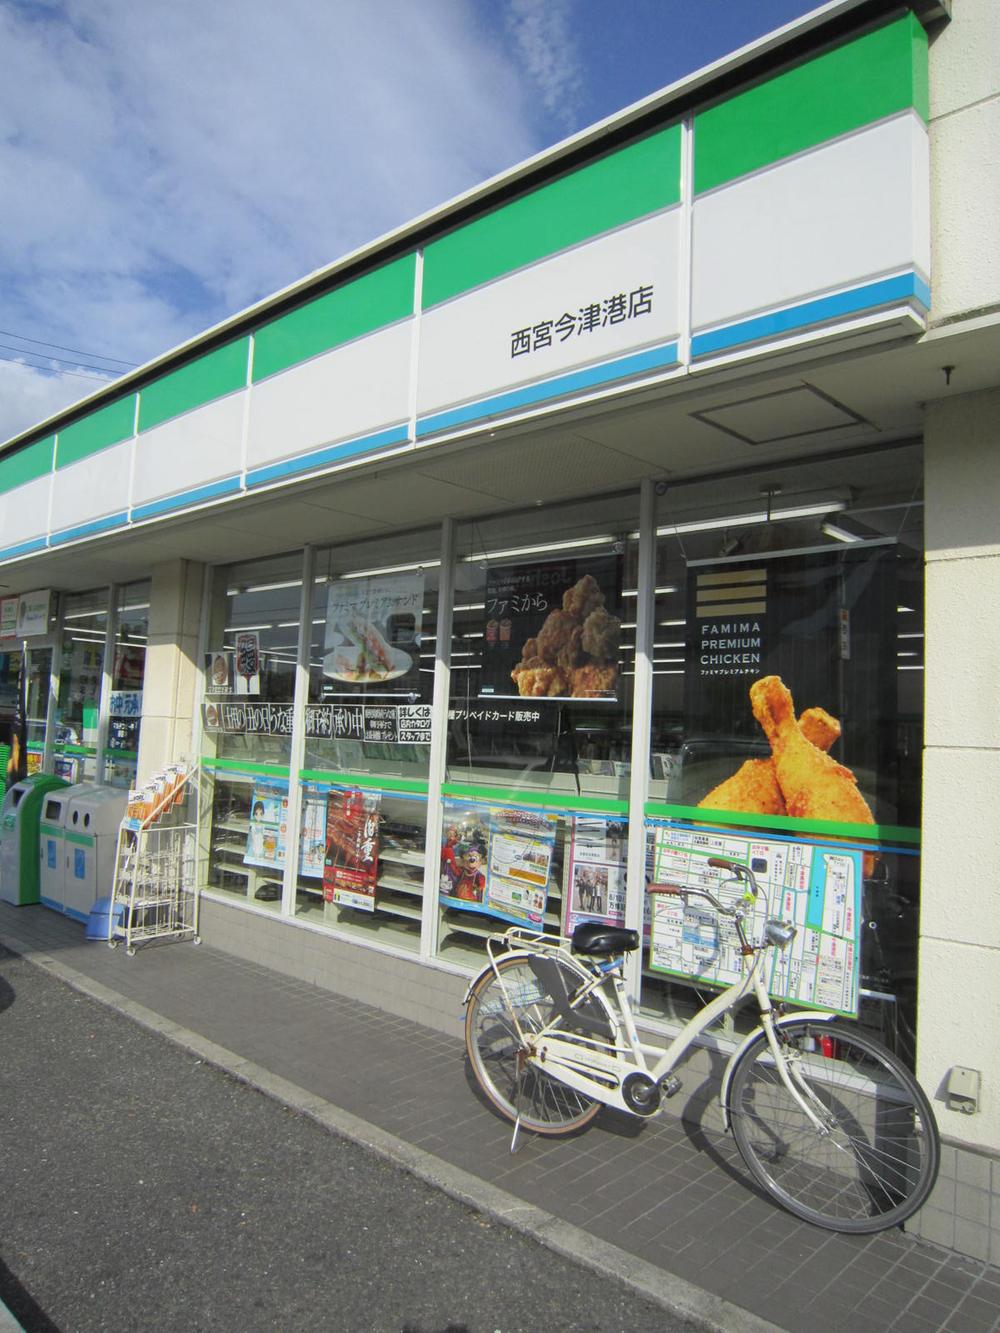 Convenience store. 836m to FamilyMart Nishinomiya Imazuminato shop